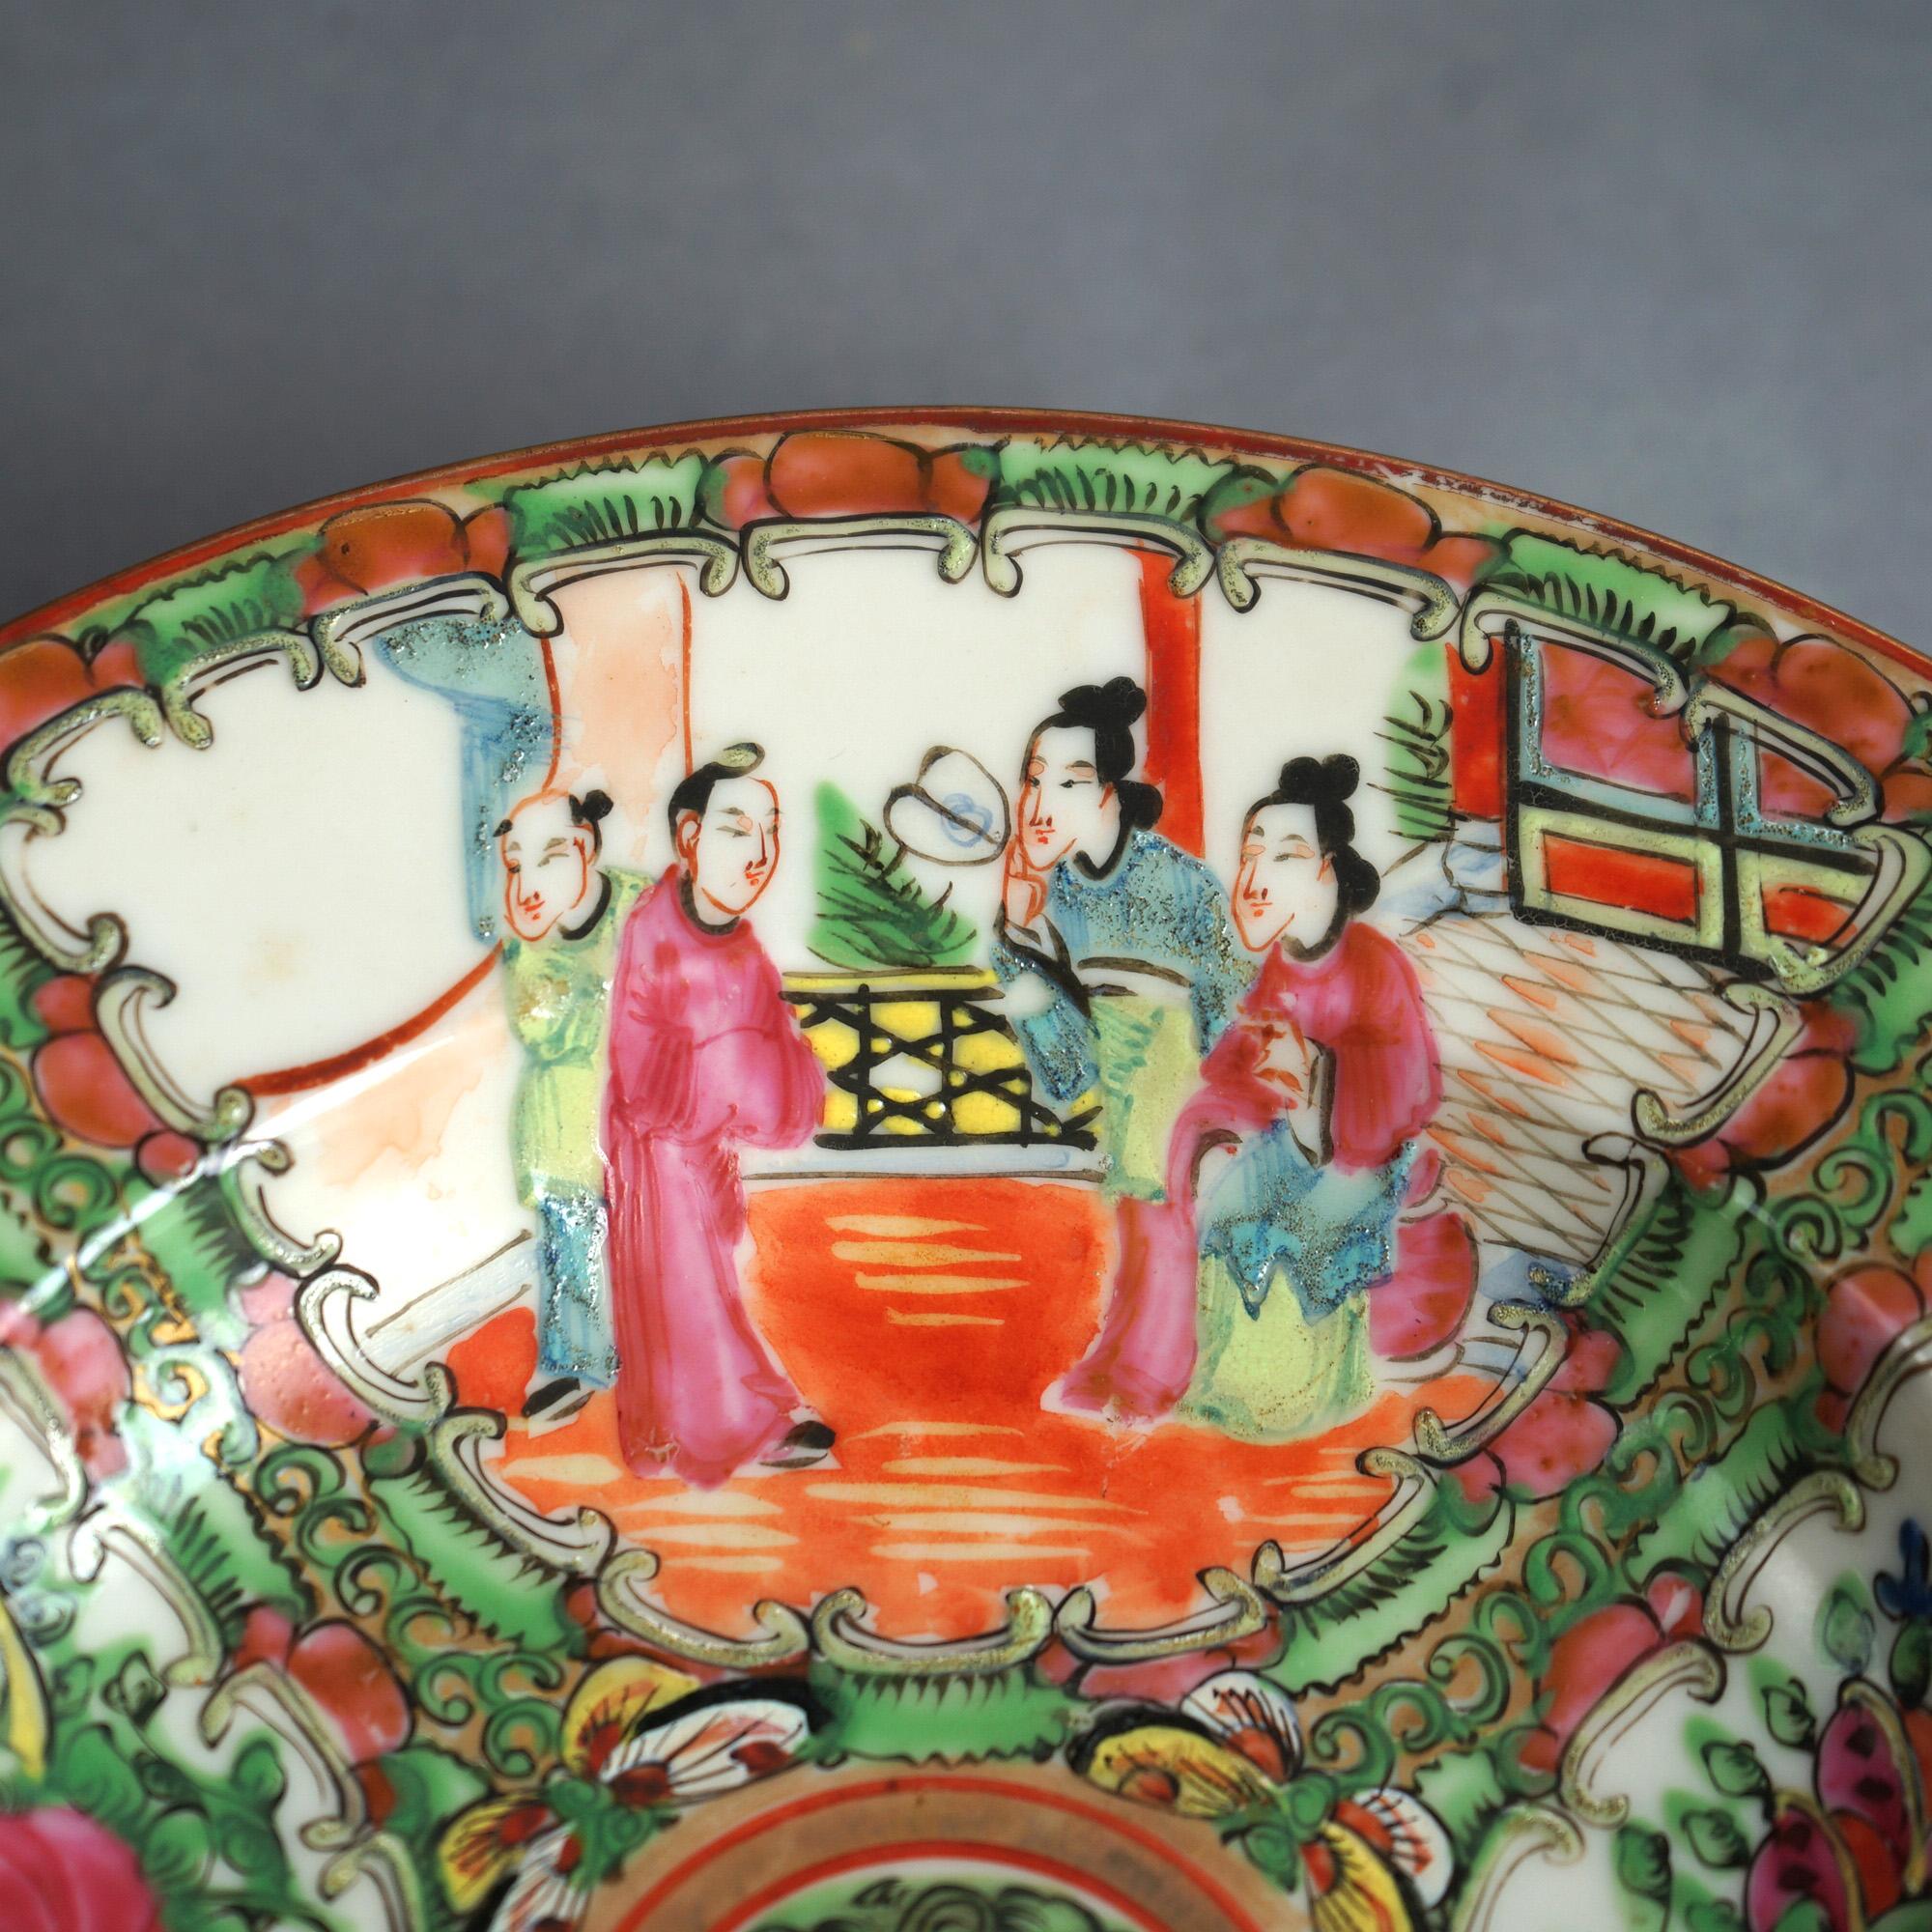 Antike chinesische Rose Medaillon Porzellanschale mit Reserven mit Gärten & Genre Szenen C1900

Maße - 1,5 